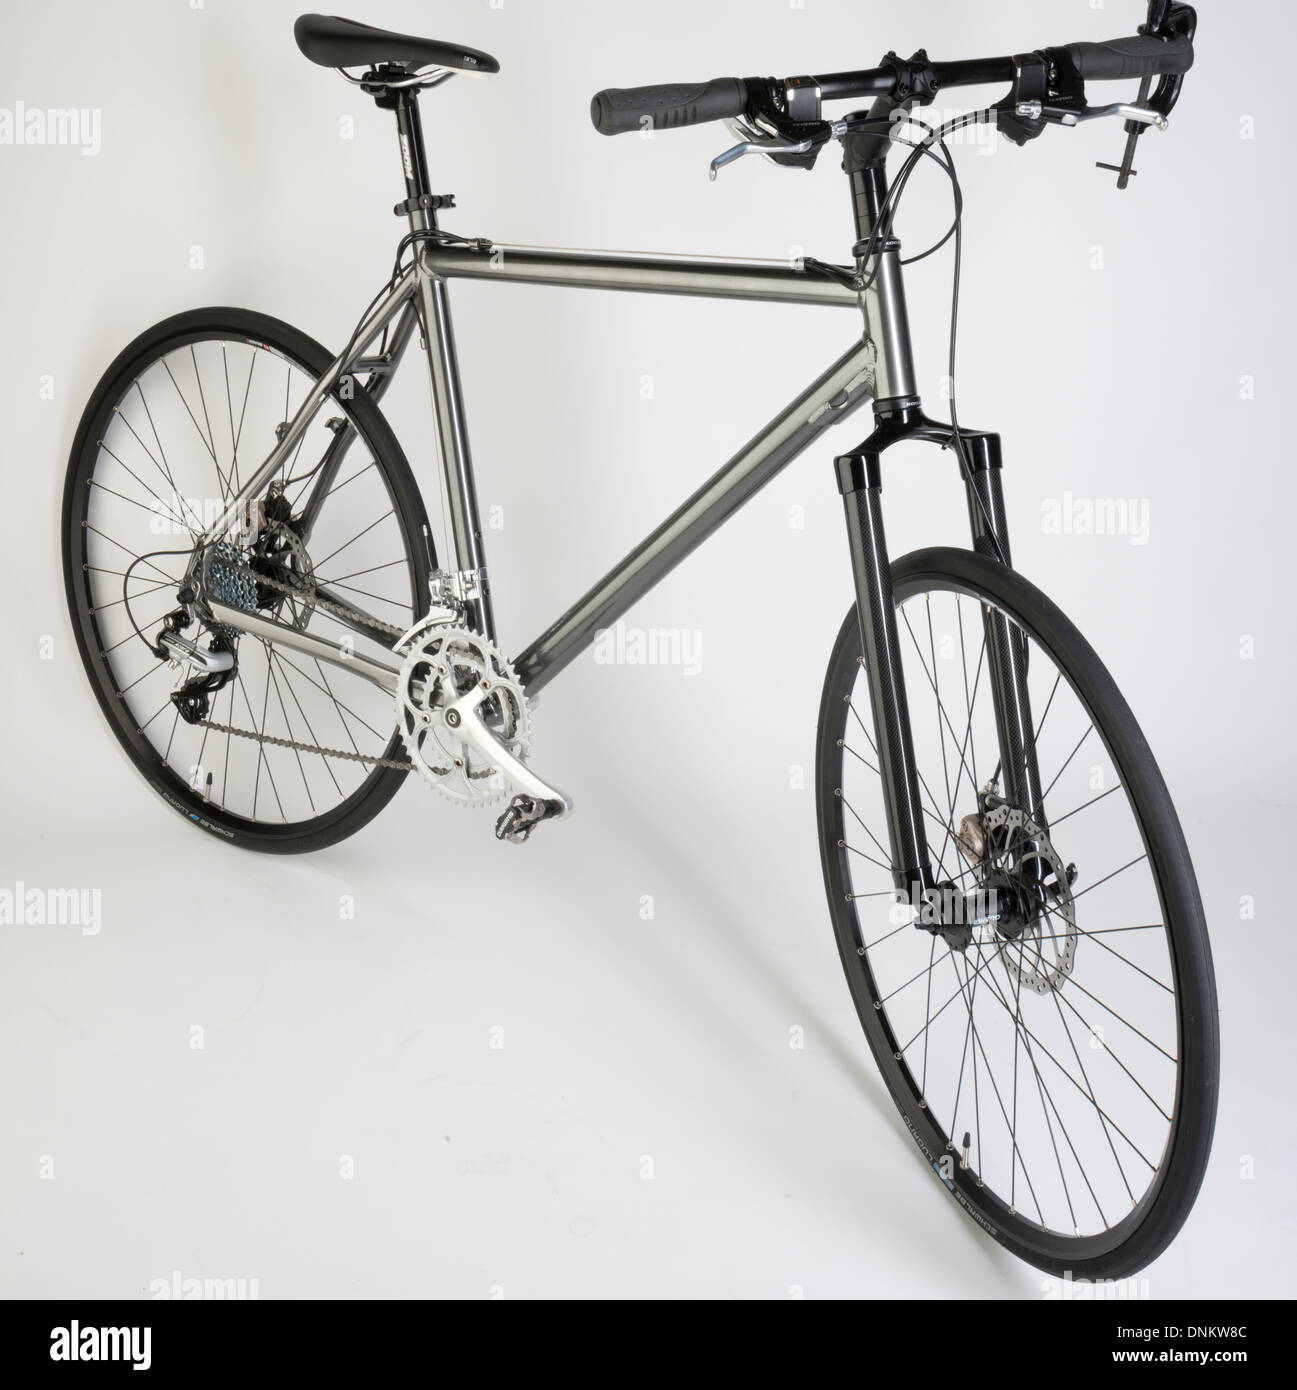 Bicicletta ibrida con freni a disco, pneumatici stradali e manubrio dritto  Foto stock - Alamy